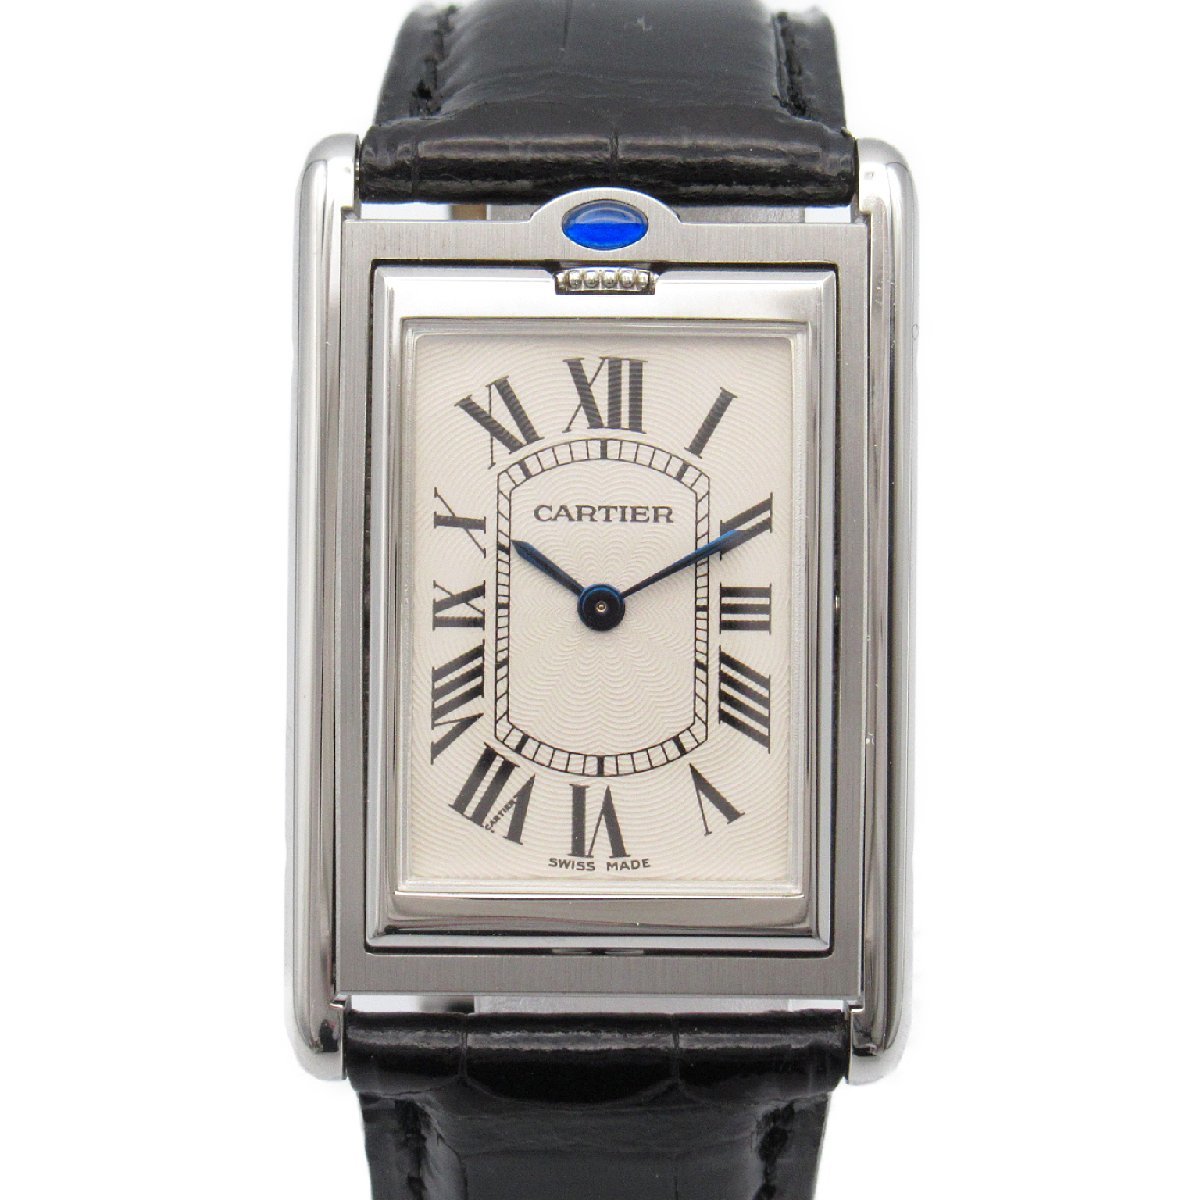 CARTIER カルティエ 腕時計 タンクバスキュラントLM シルバー系 ステンレススチール レザーベルト 革 中古 レディース